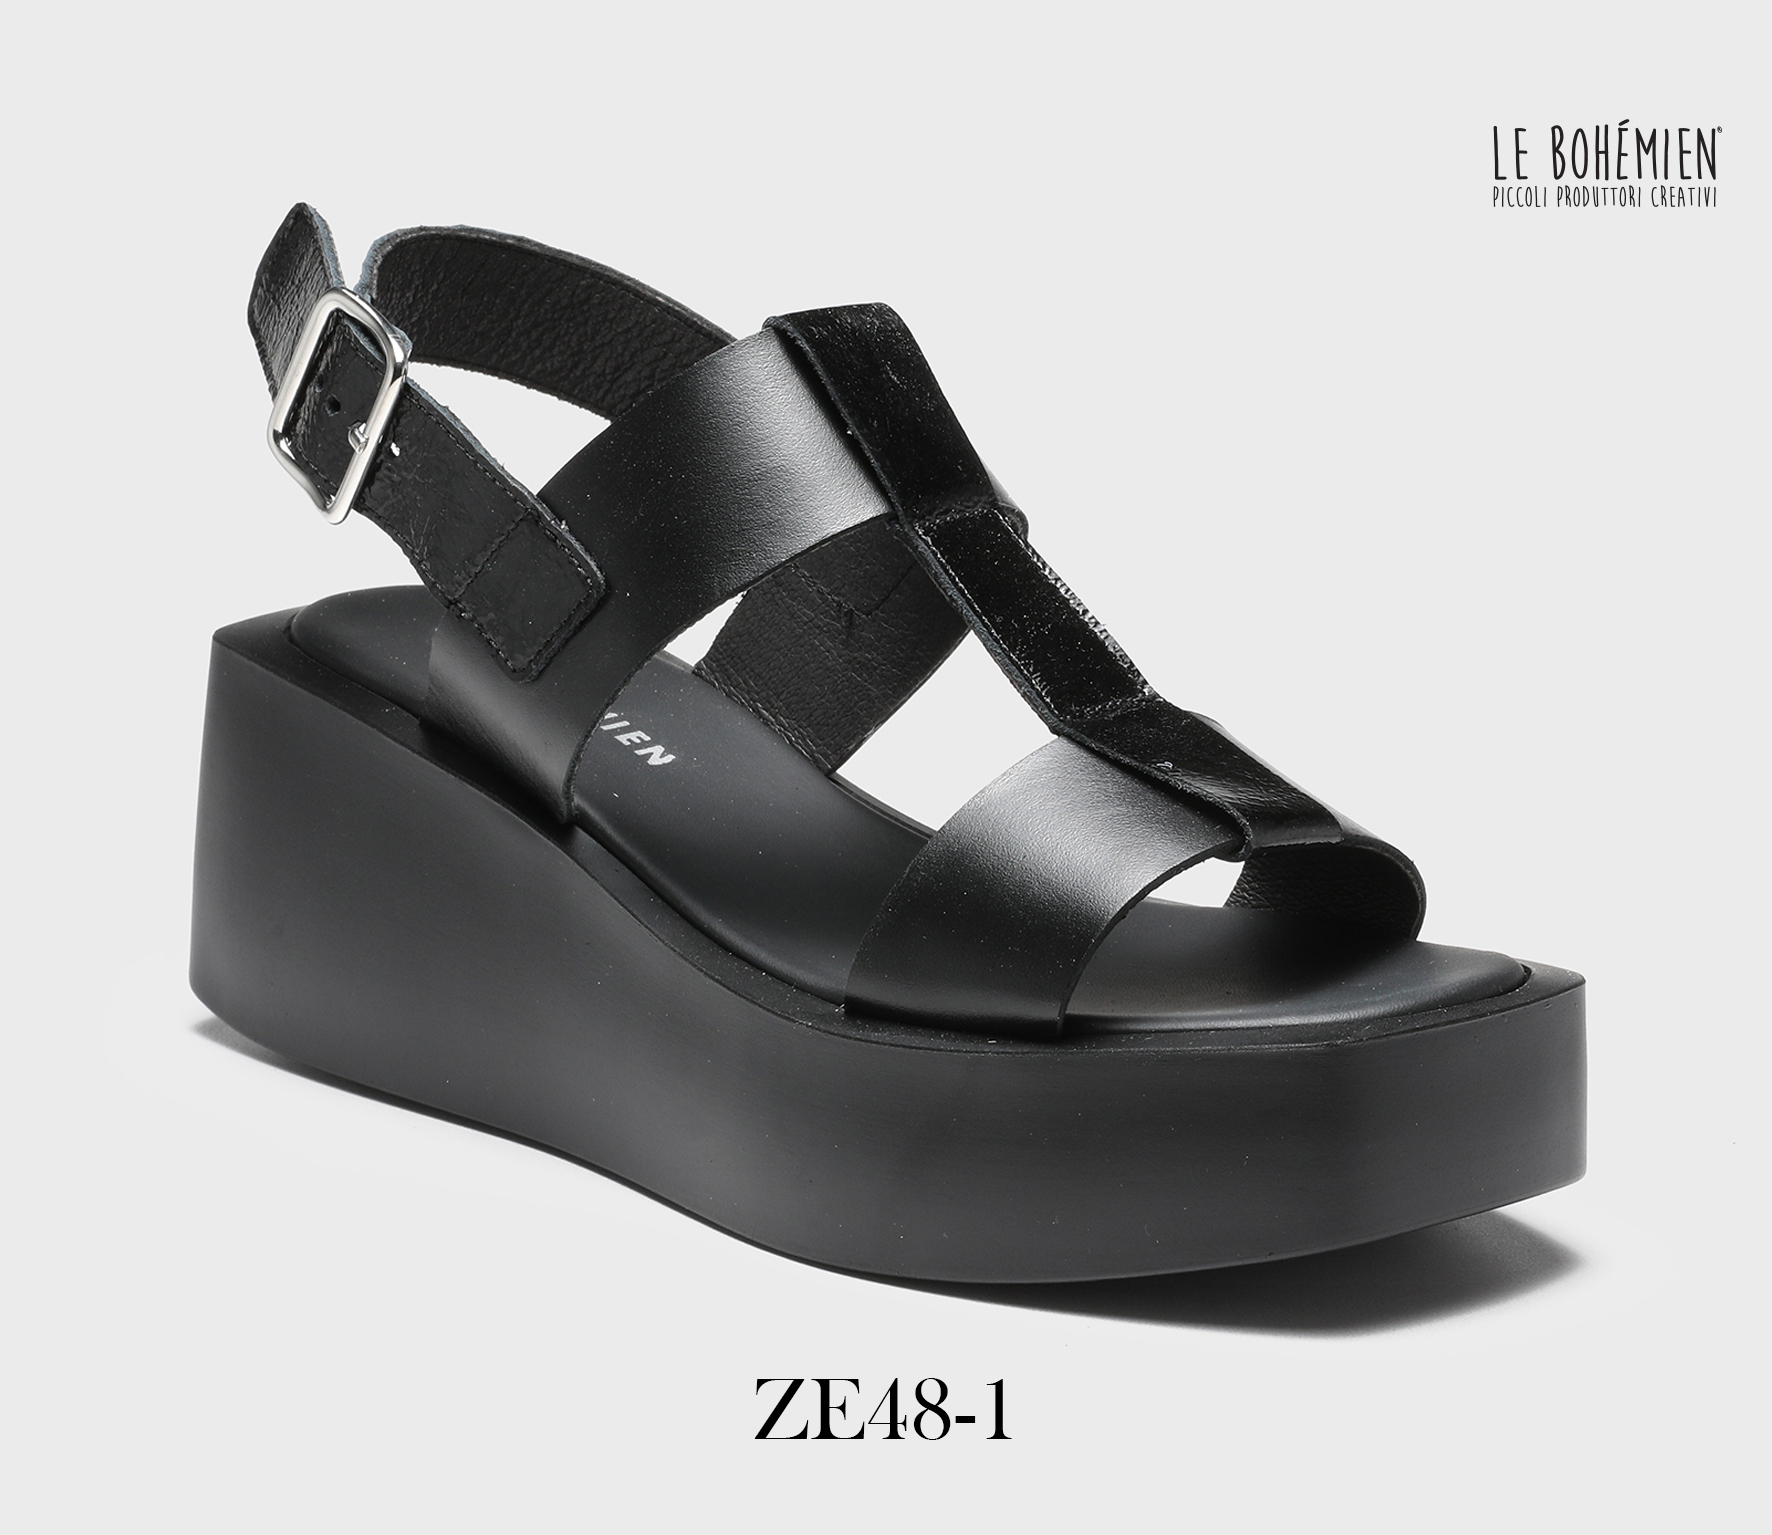 Women's Sandals Shoes ZE48-1